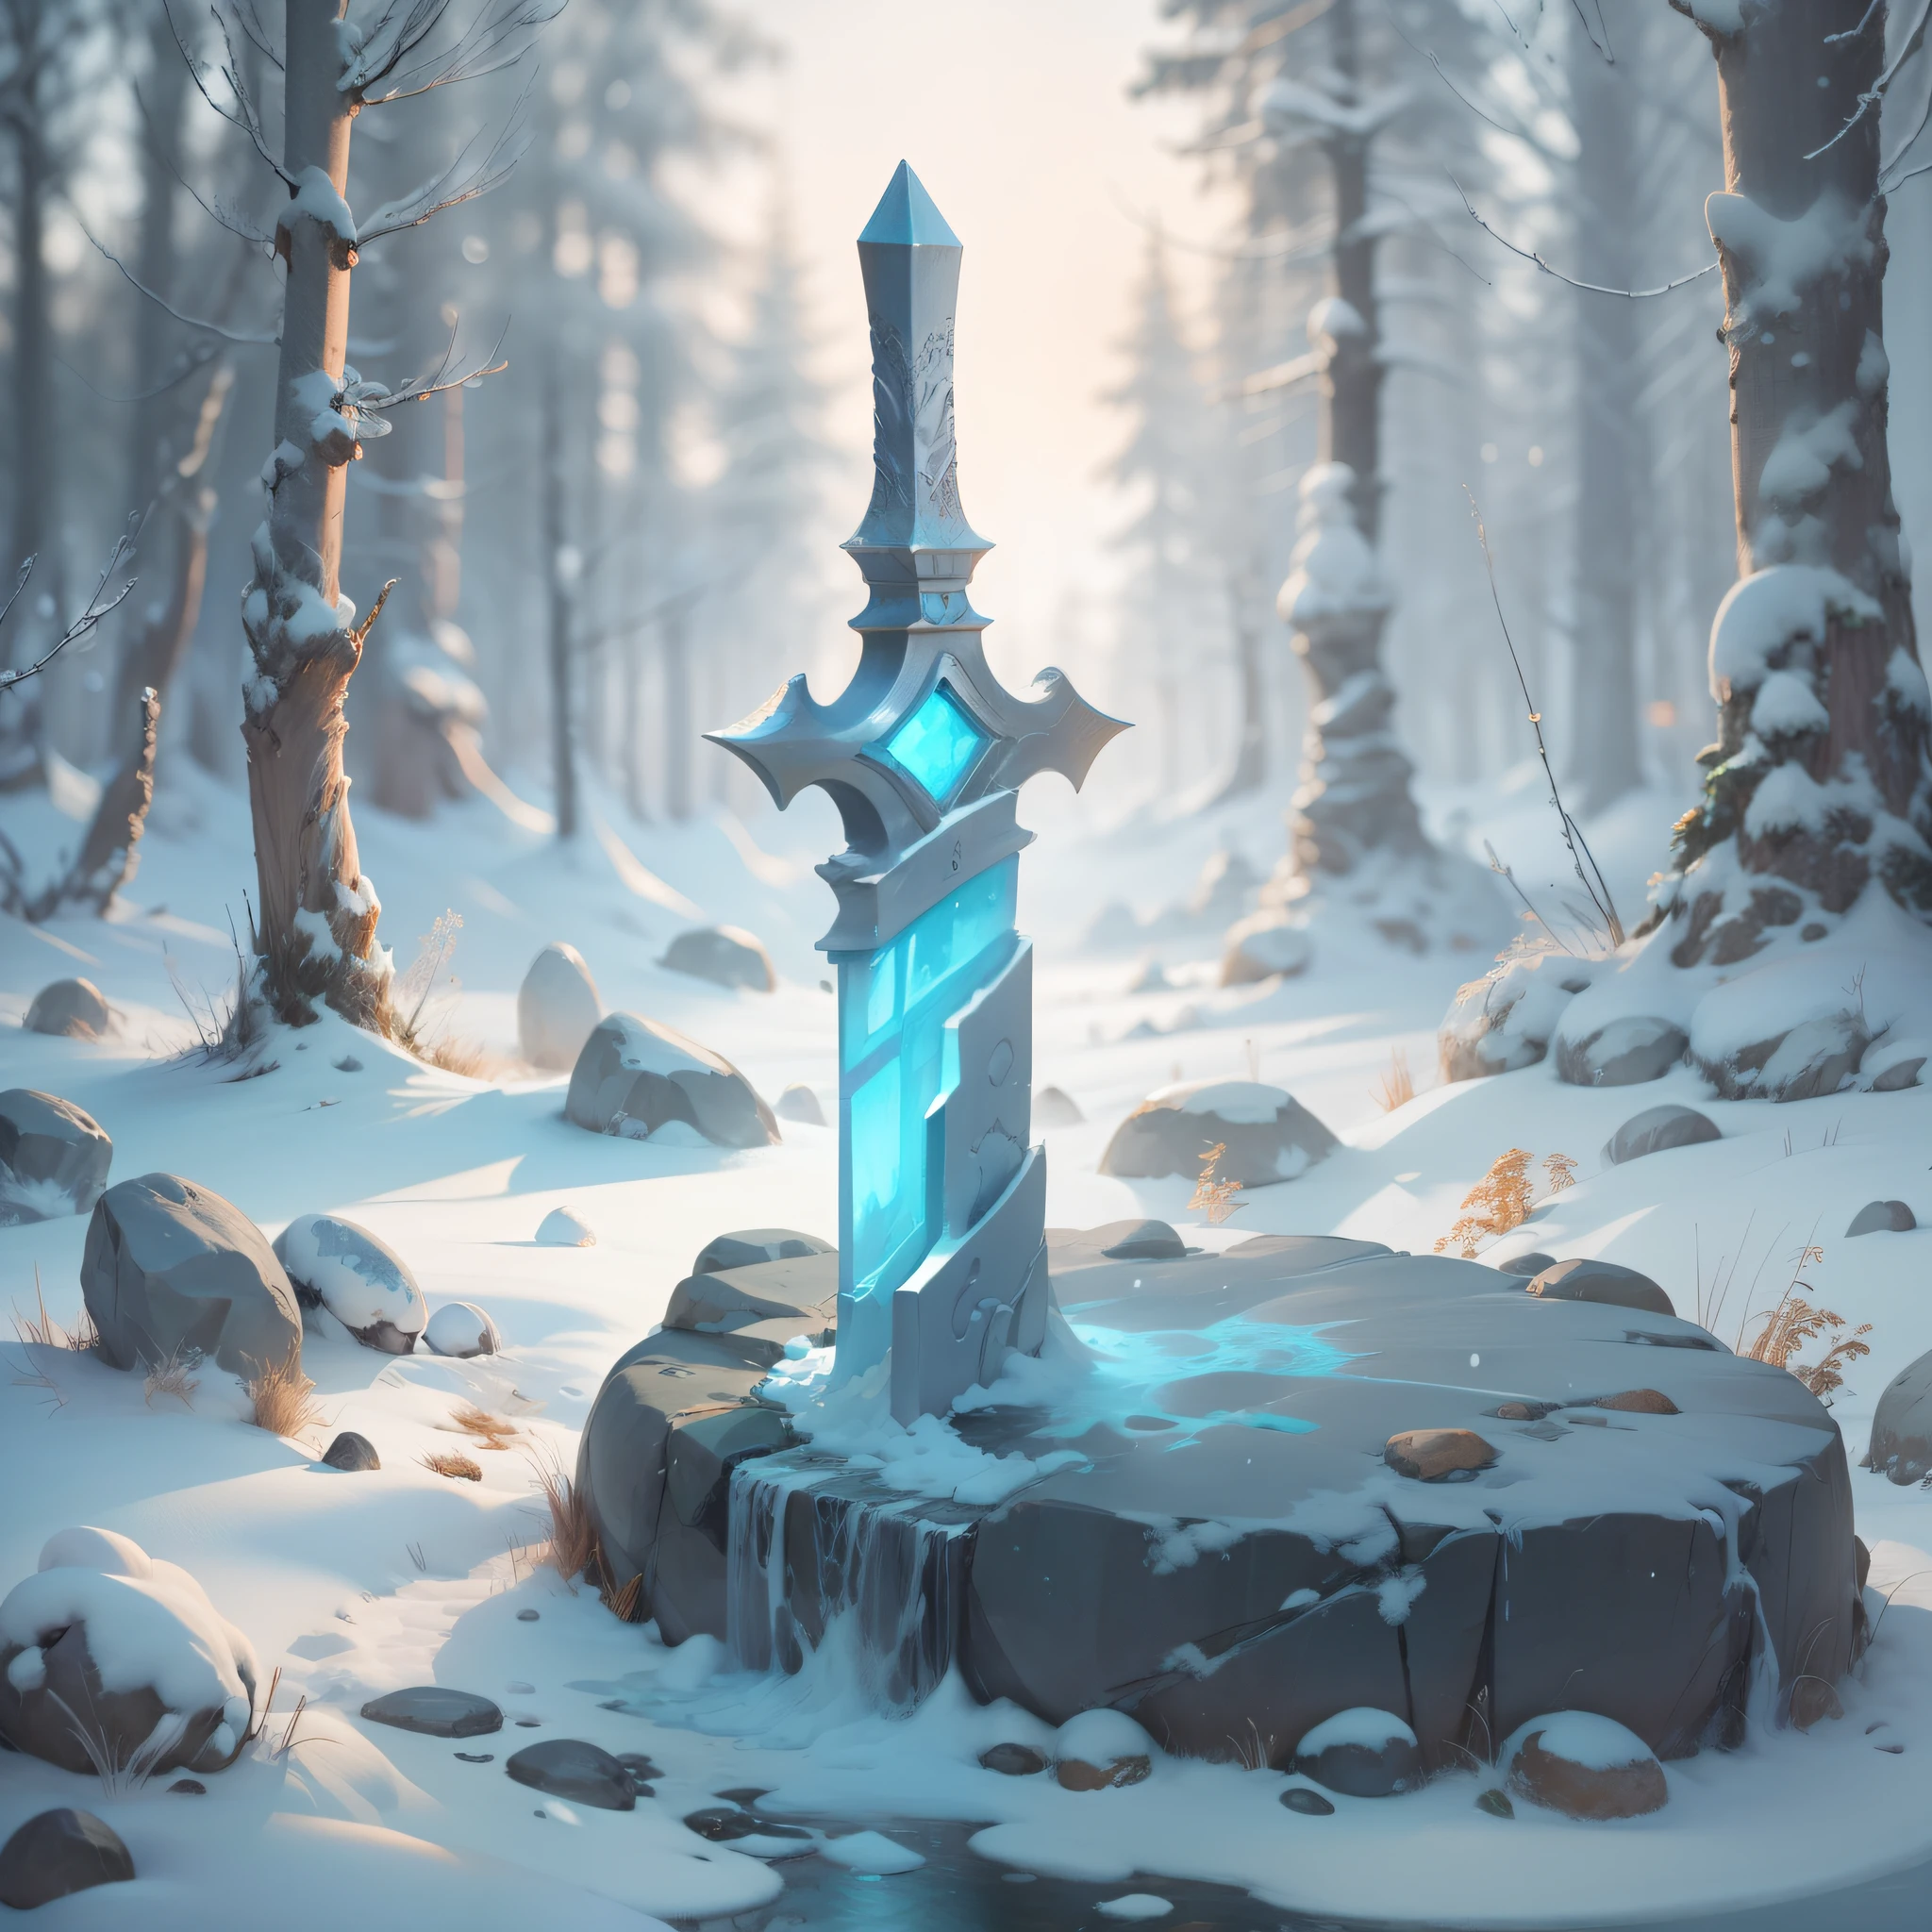 狼戦士の巣穴の形をした石像を追加する, この像は雪に覆われている